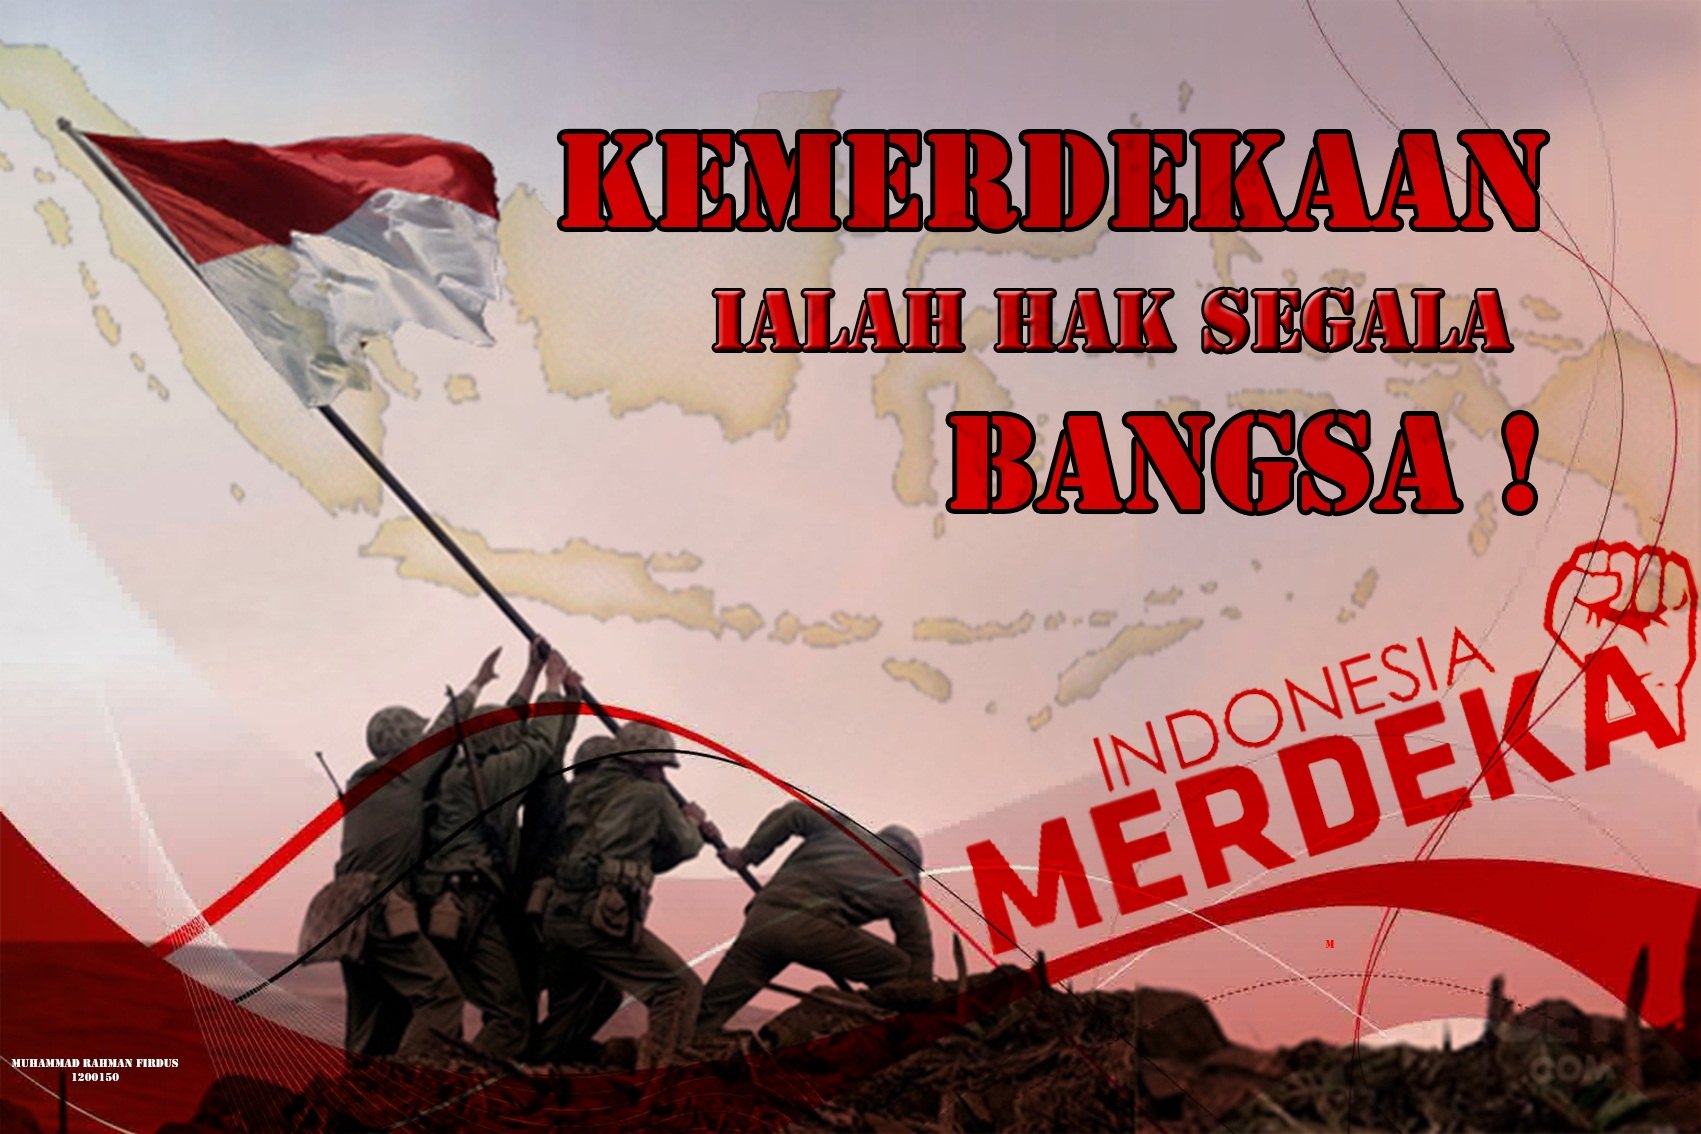 Indonesia kemerdekaan terwujud berkat adanya bangsa Kemerdekaan Berkat